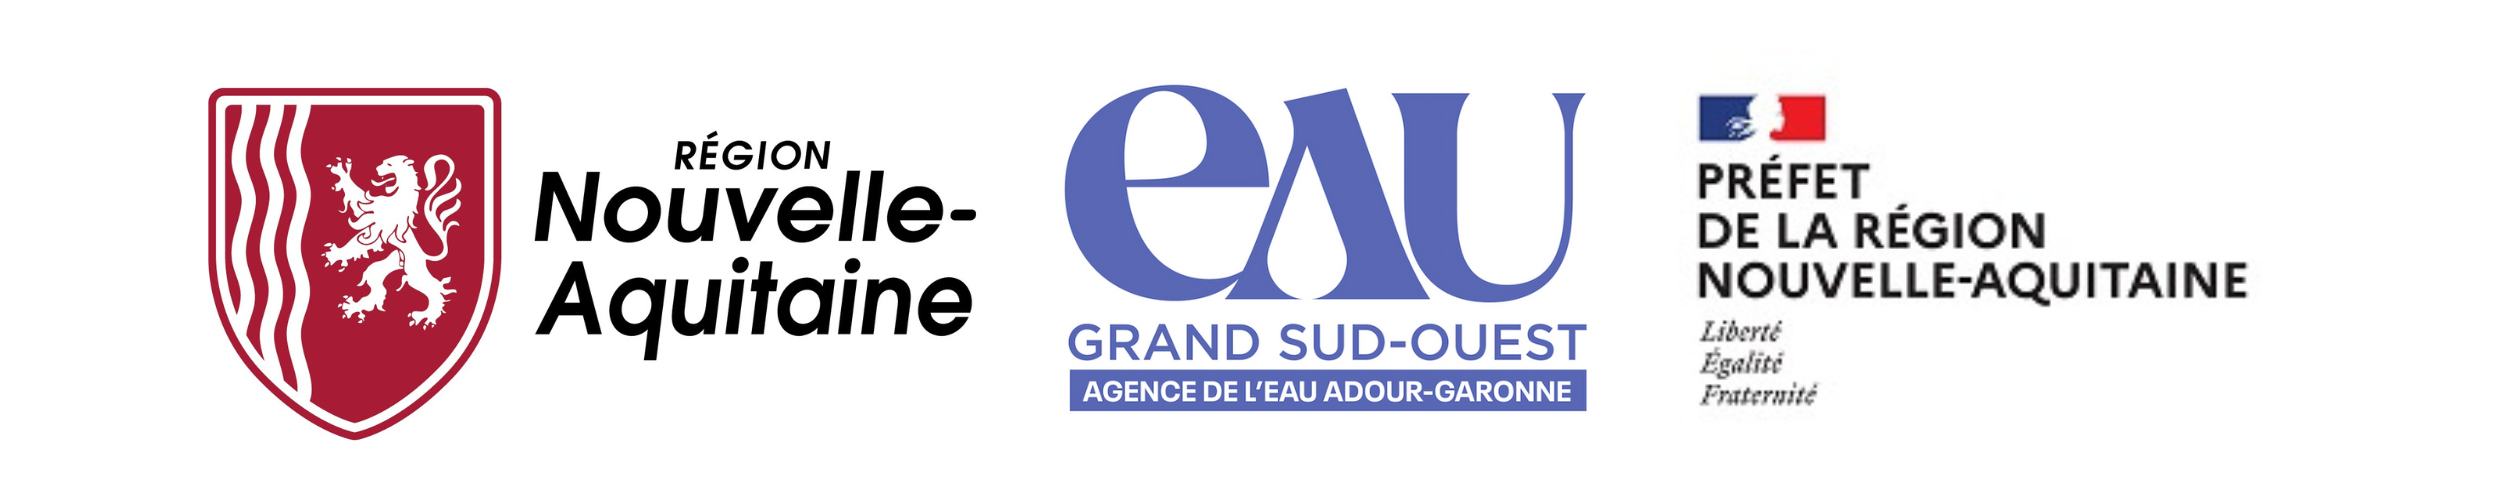 Conseil Régional Nouvelle-Aquitaine, DREAL Nouvelle-Aquitaine et Agence de l'eau Adour Garonne